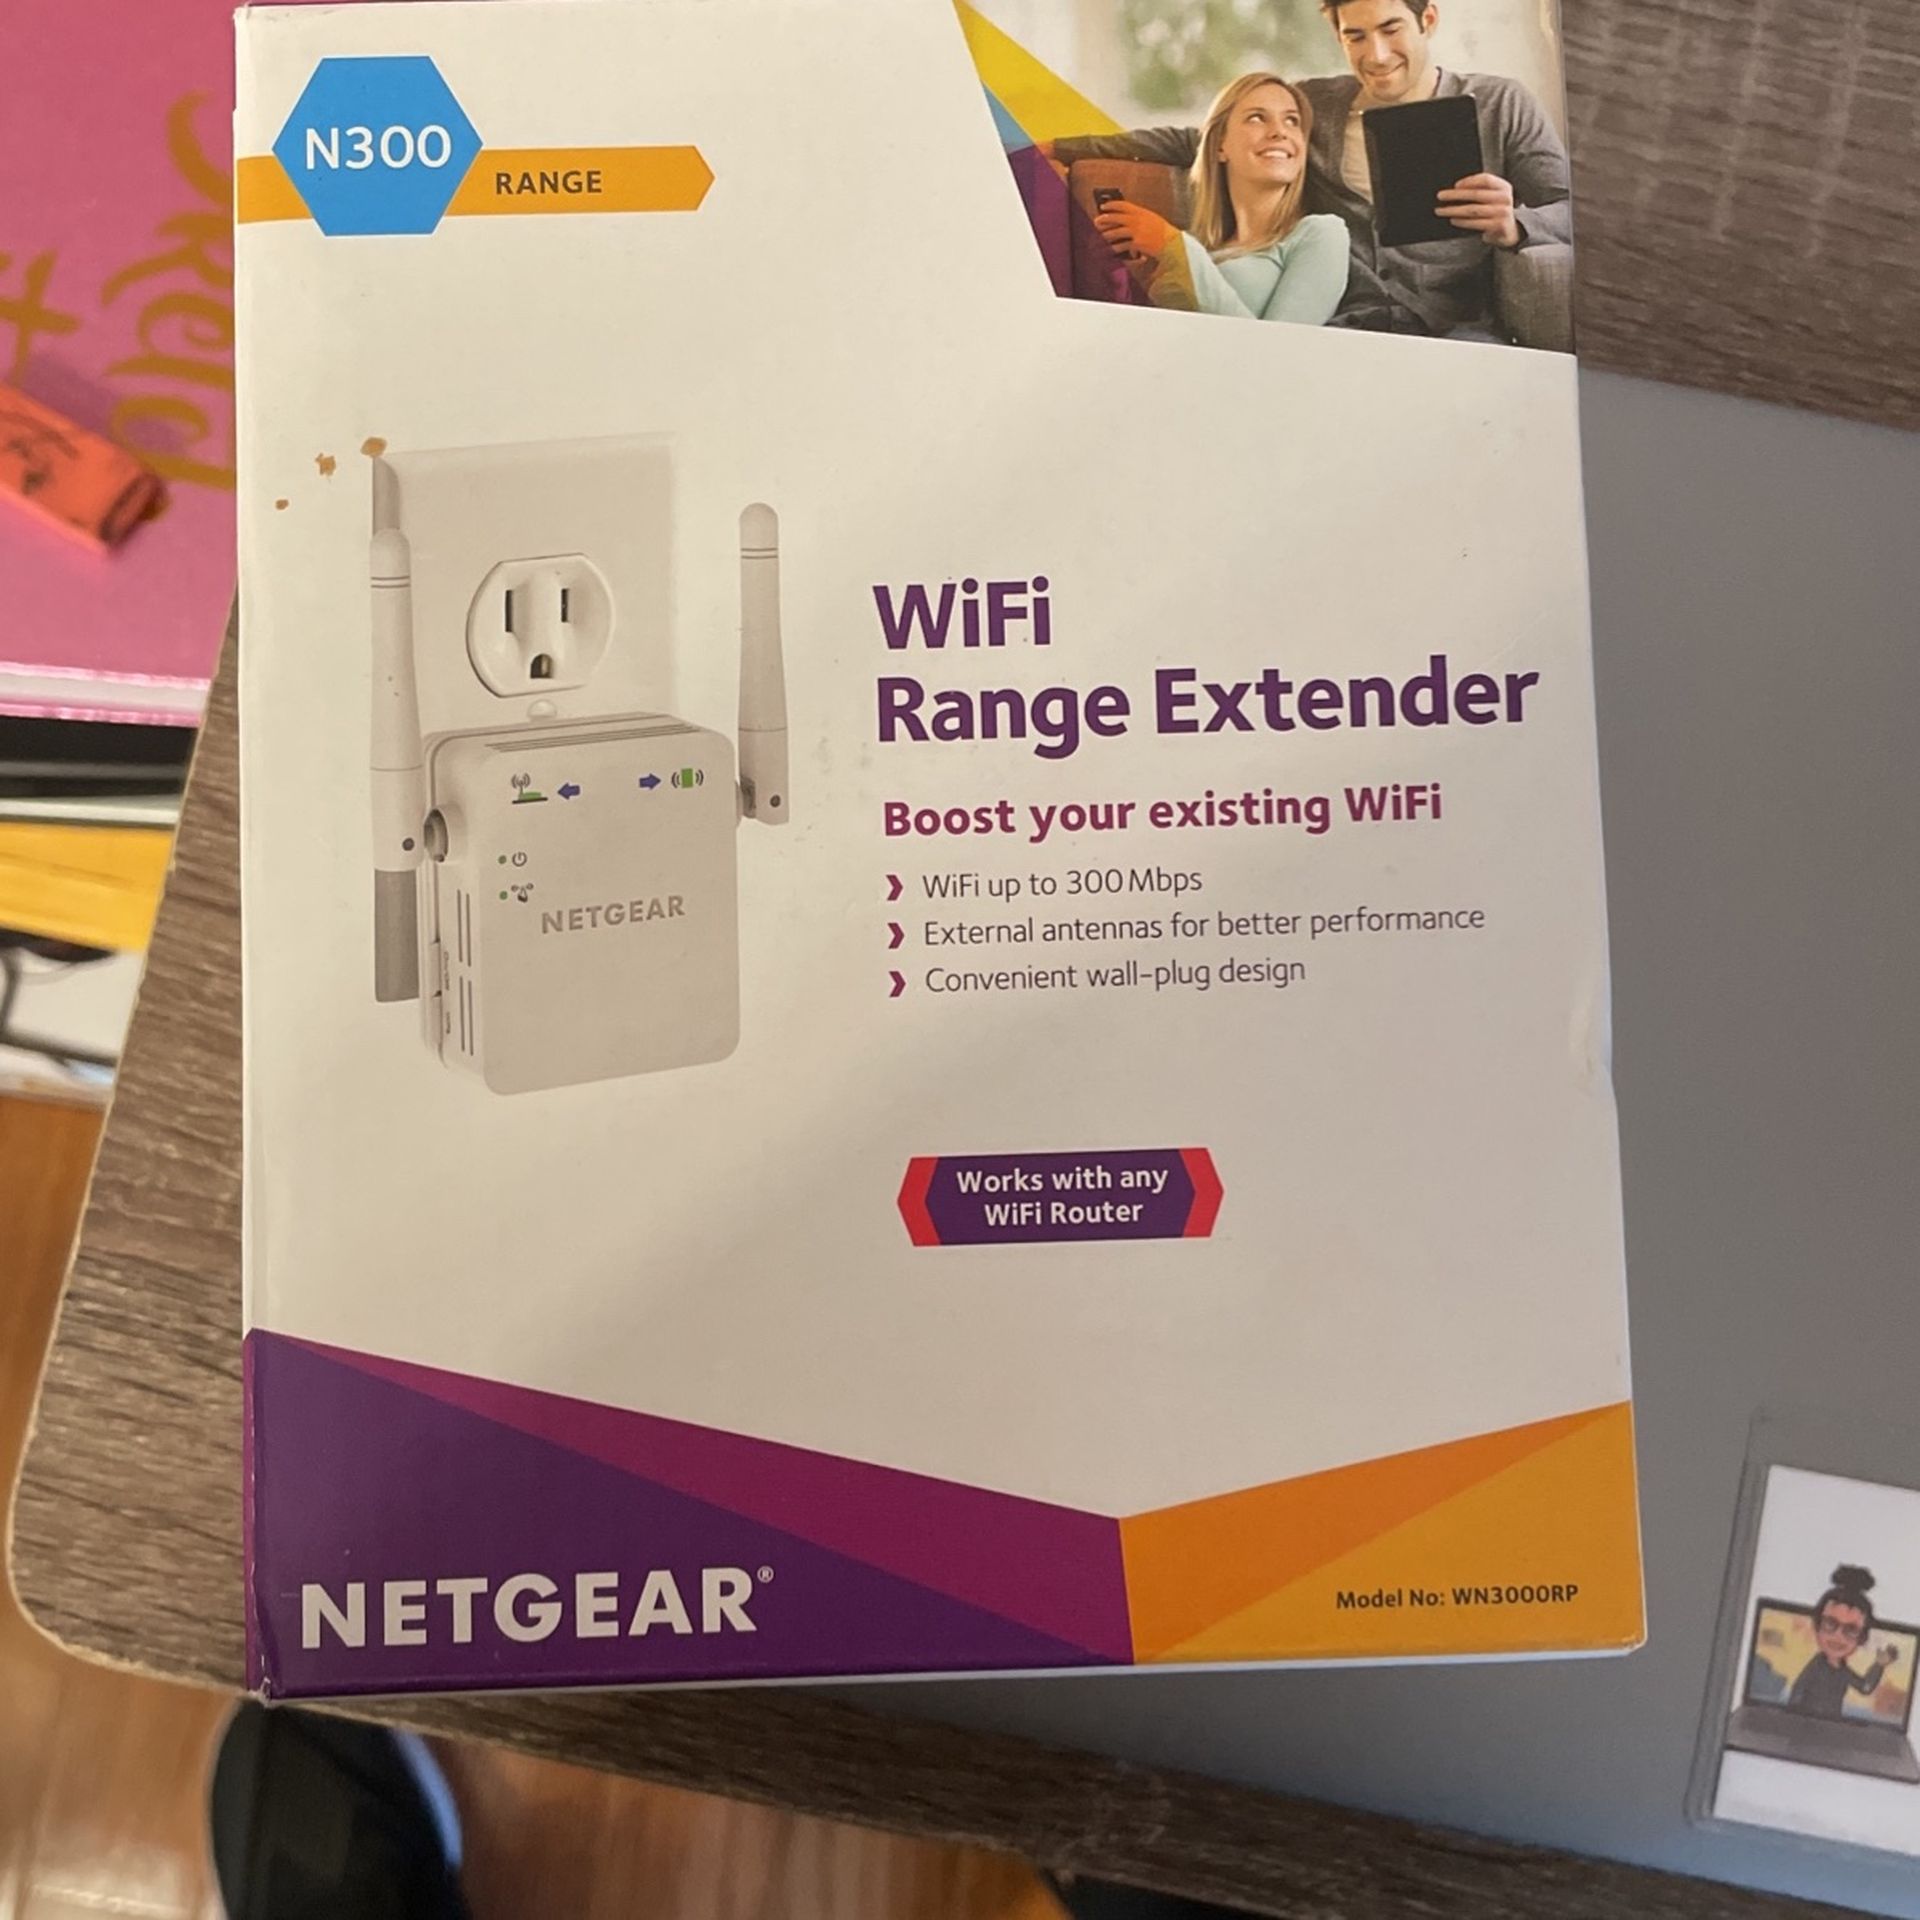 Net gear WiFi Extender